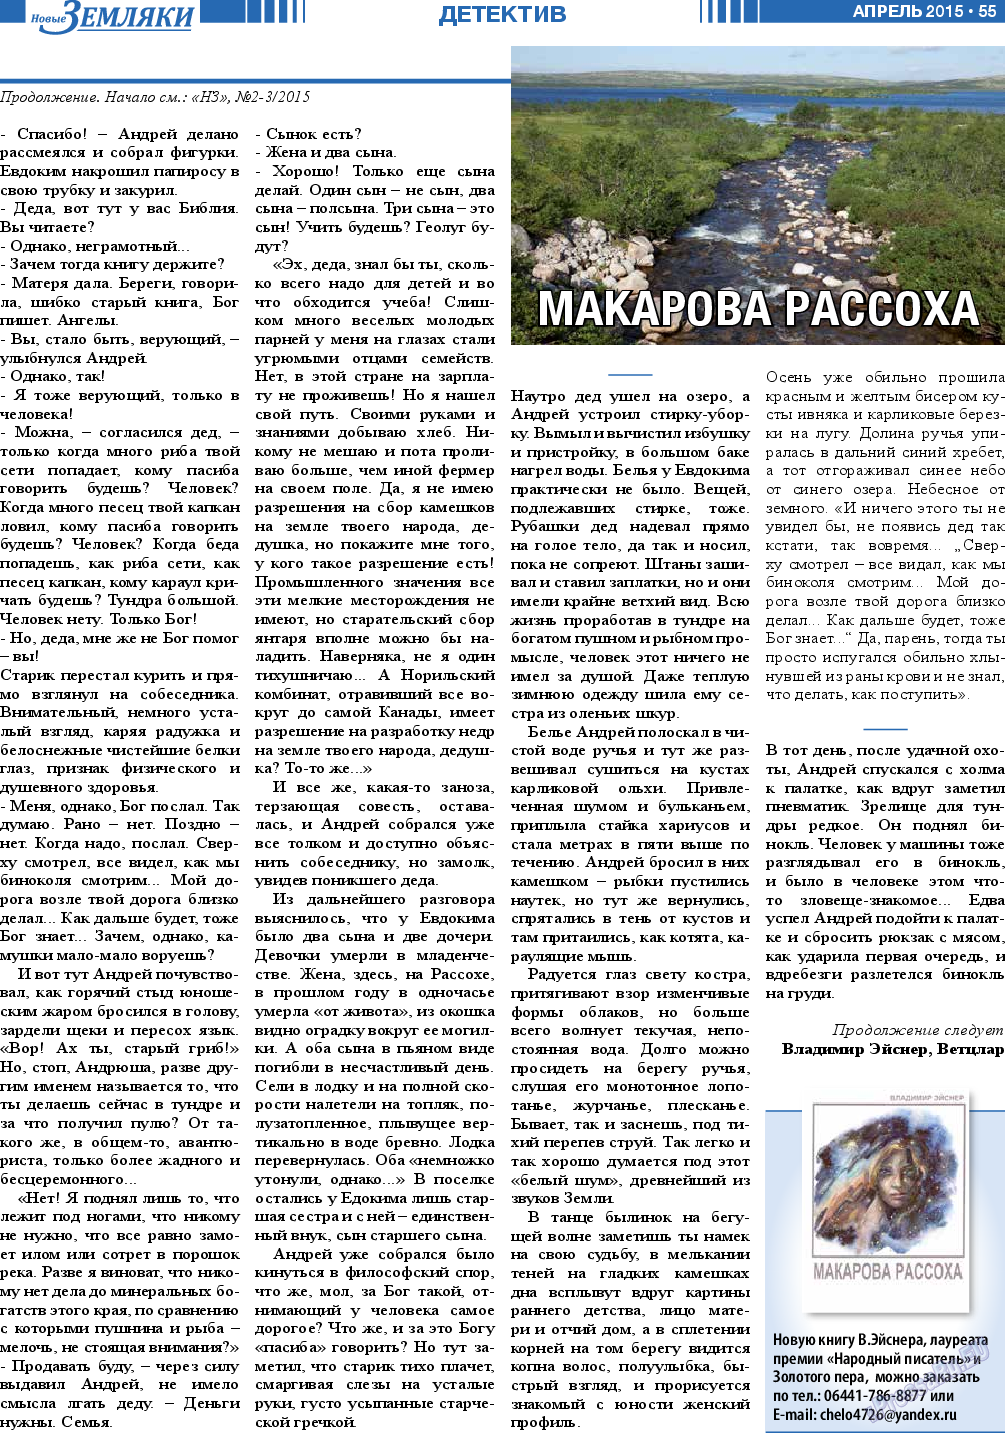 Новые Земляки, газета. 2015 №4 стр.55